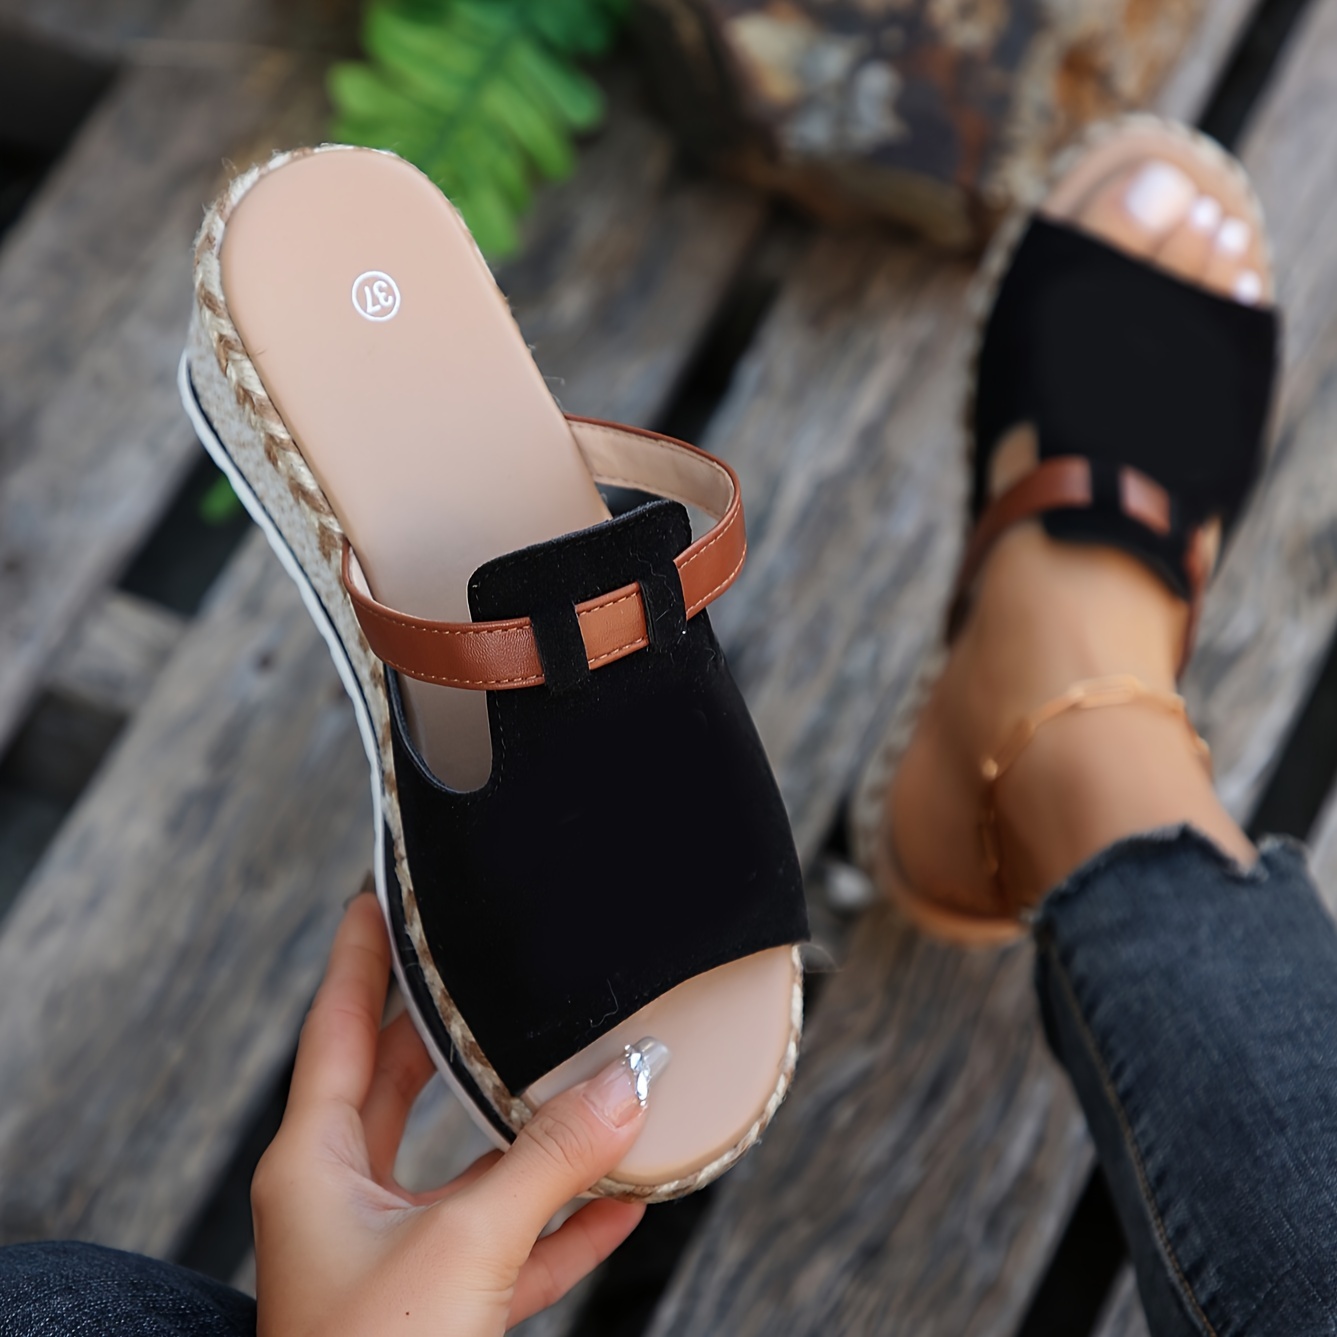 Summer Women's Suede Open Toe Zipper Flat Non-Slip Tassel Sandals Beach  Shoes